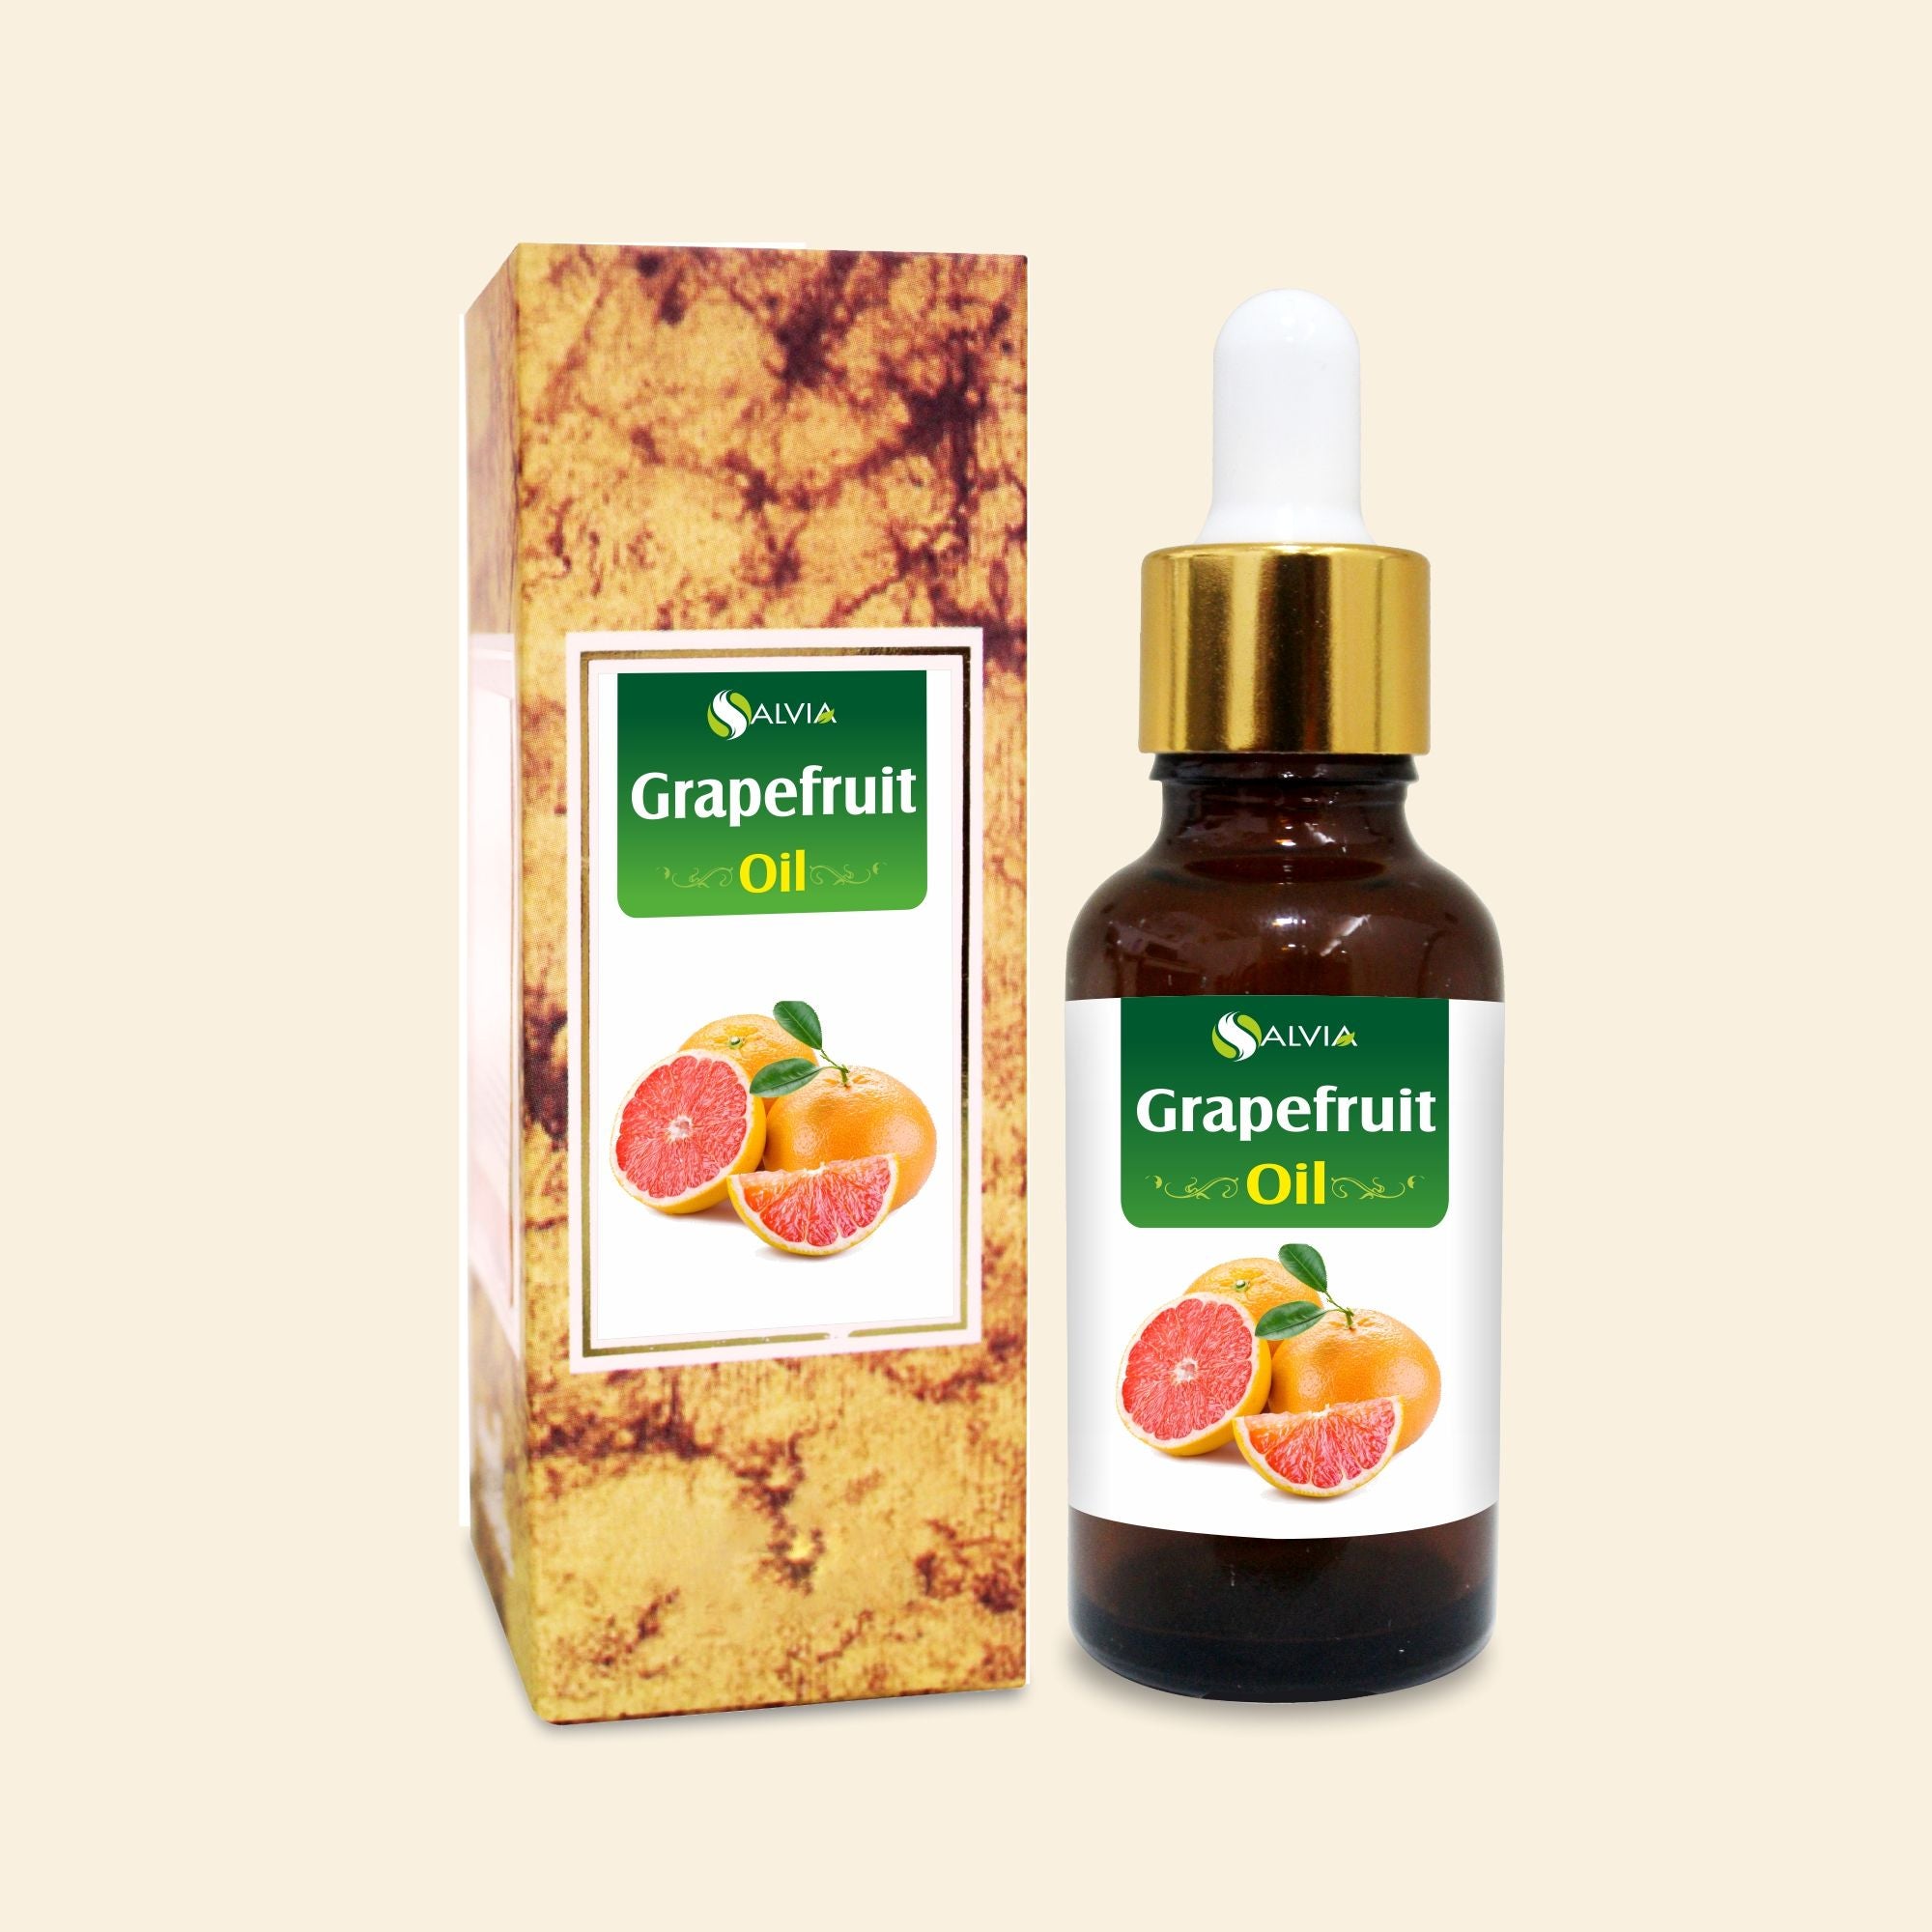 Salvia Natural Essential Oils Grapefruit Oil (Citrus Paradisi)100% Natural Pure Essential Oil